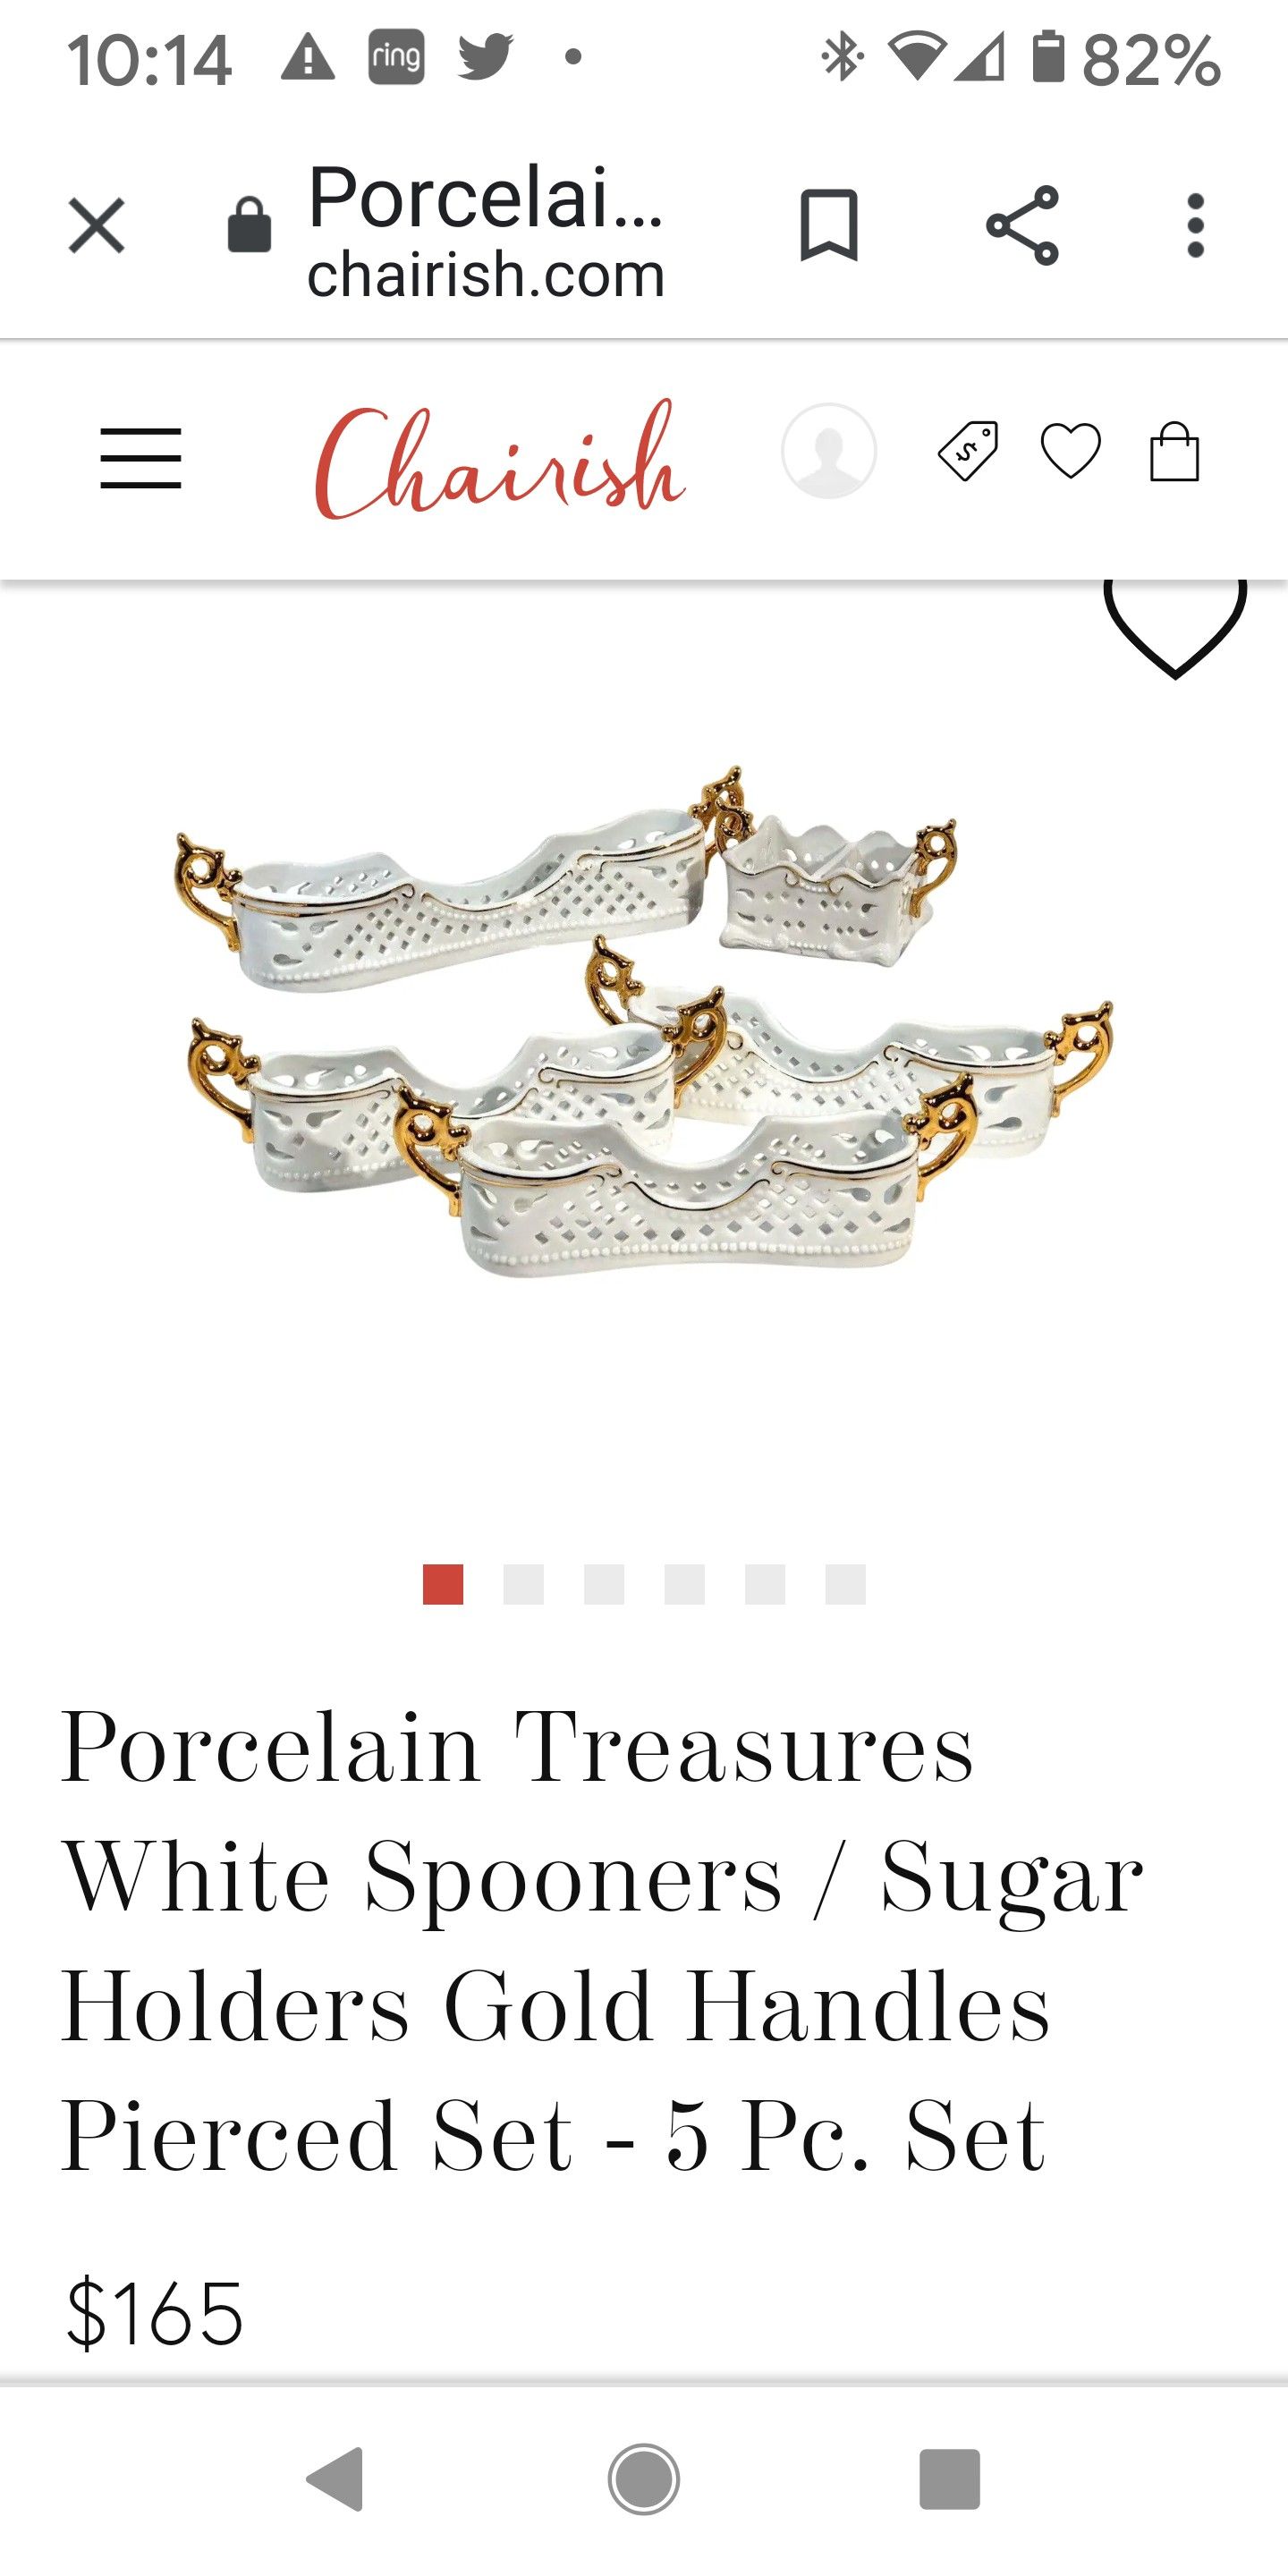 Porcelain treasures spoon holders